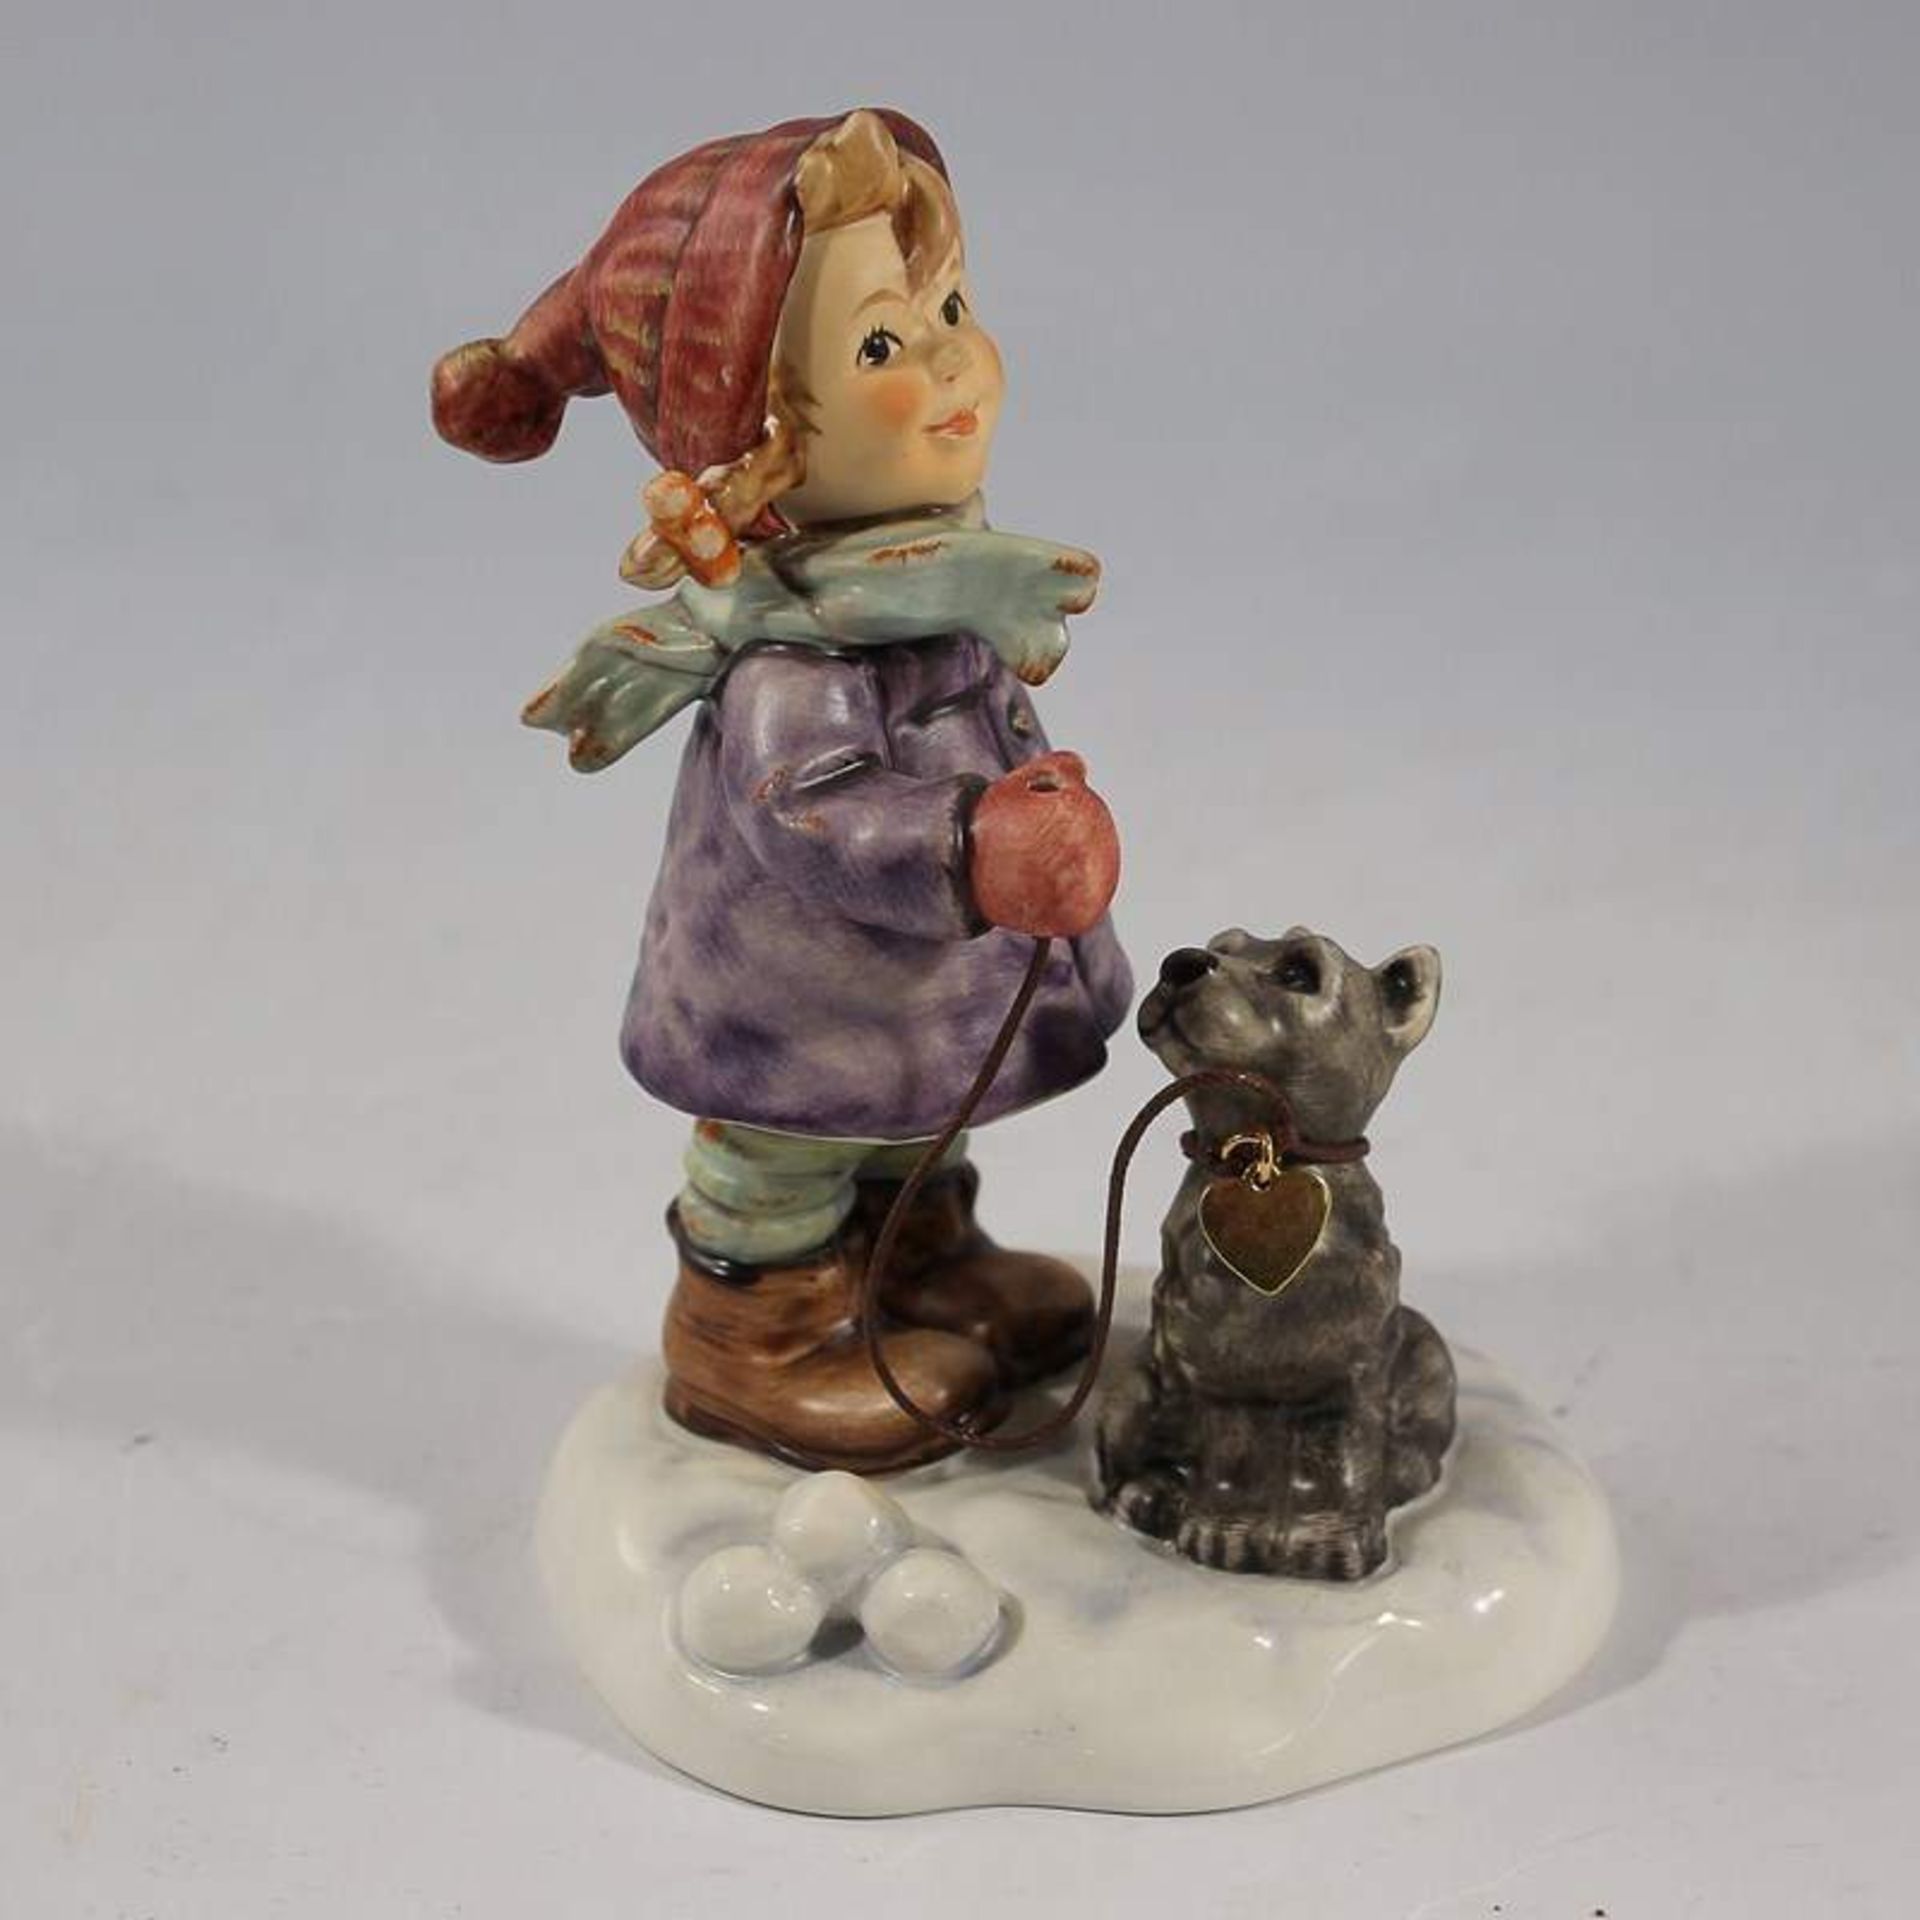 Hummel - Figur gem. Goebel, sign. am Sockel, "Komm jetzt", Nr. 2037, Kind mit Hund auf Schneesockel,